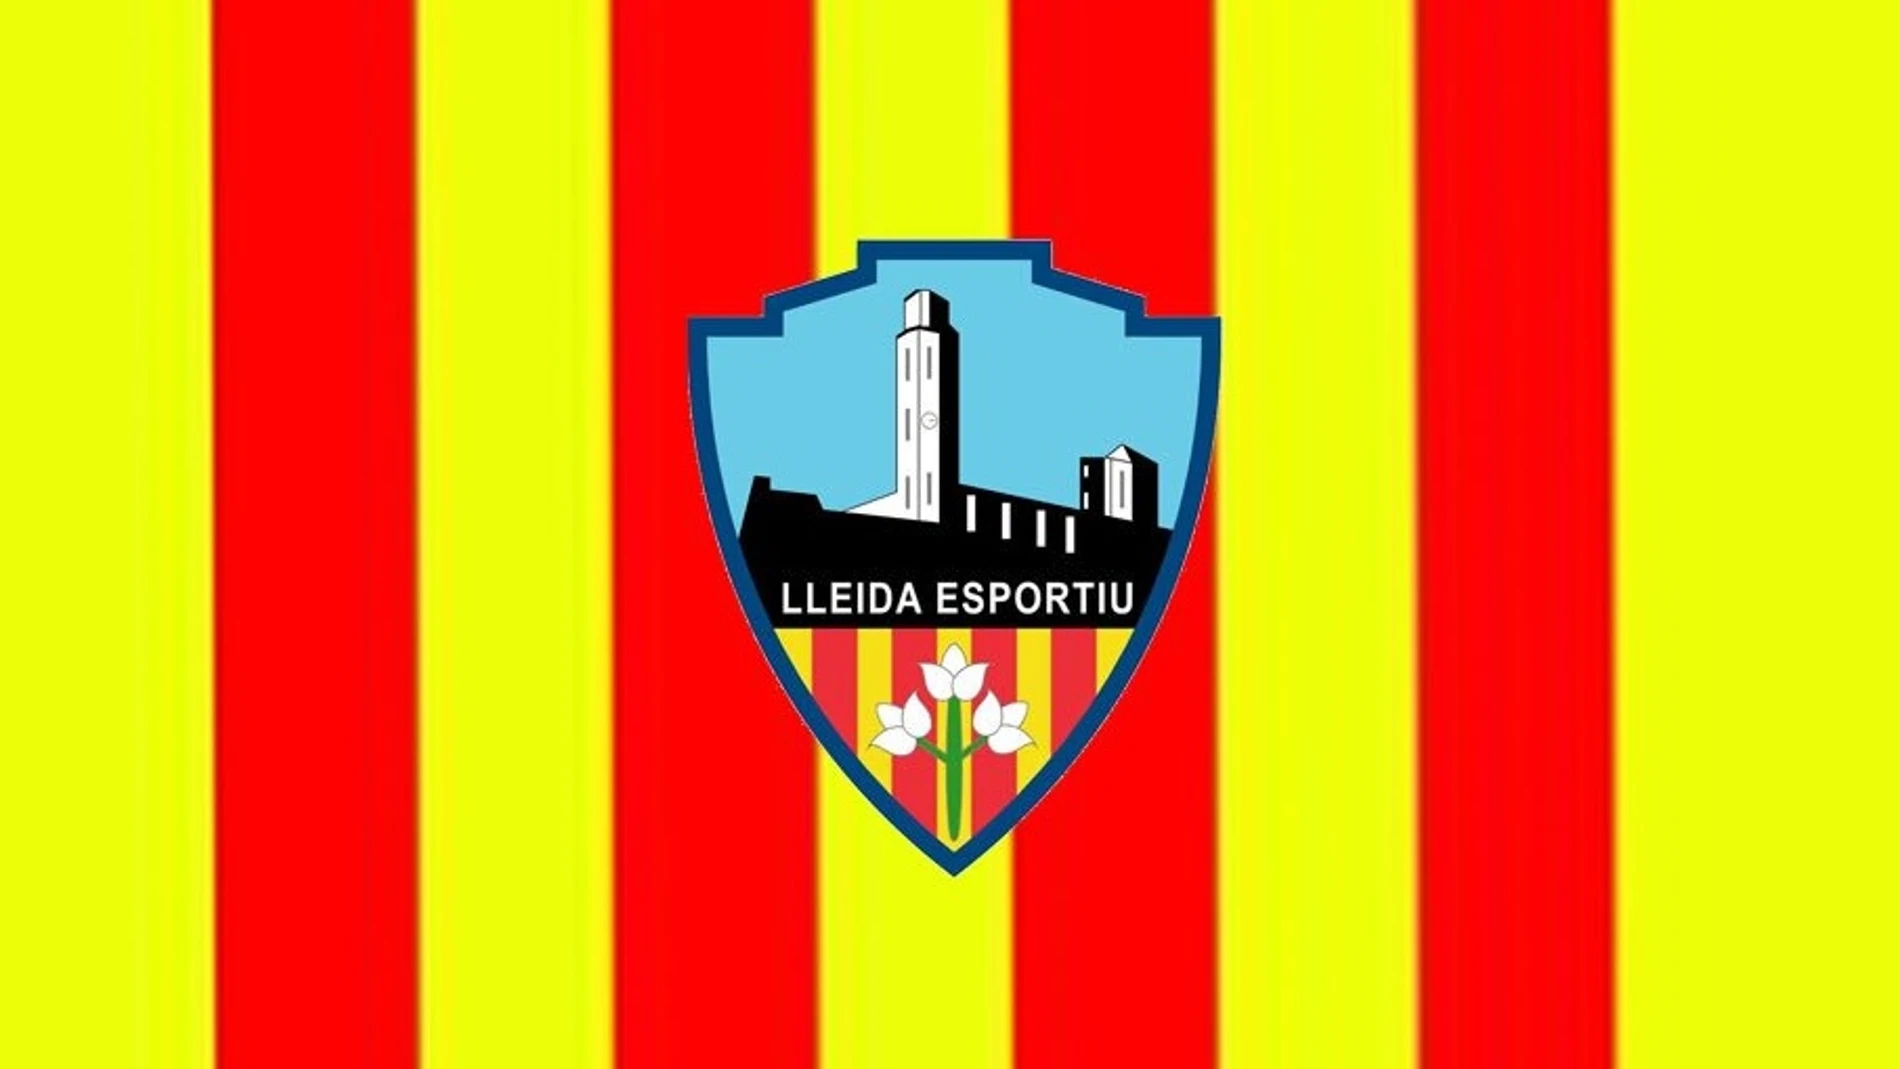 Comunicado del Lleida